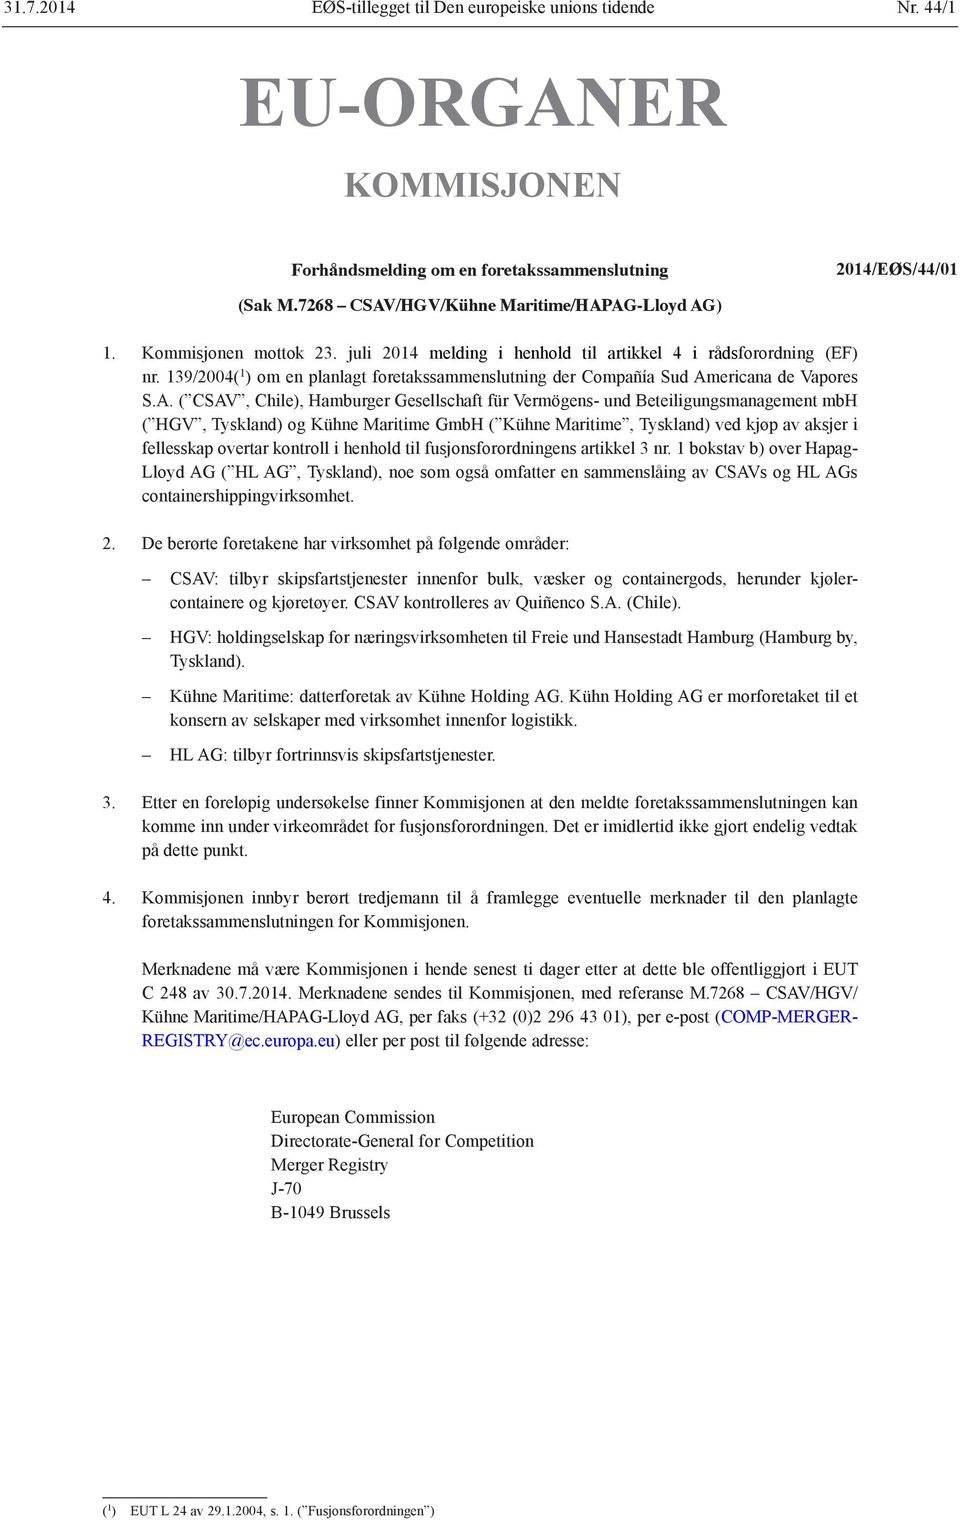 139/2004( 1 ) om en planlagt foretakssammenslutning der Compañía Sud Am